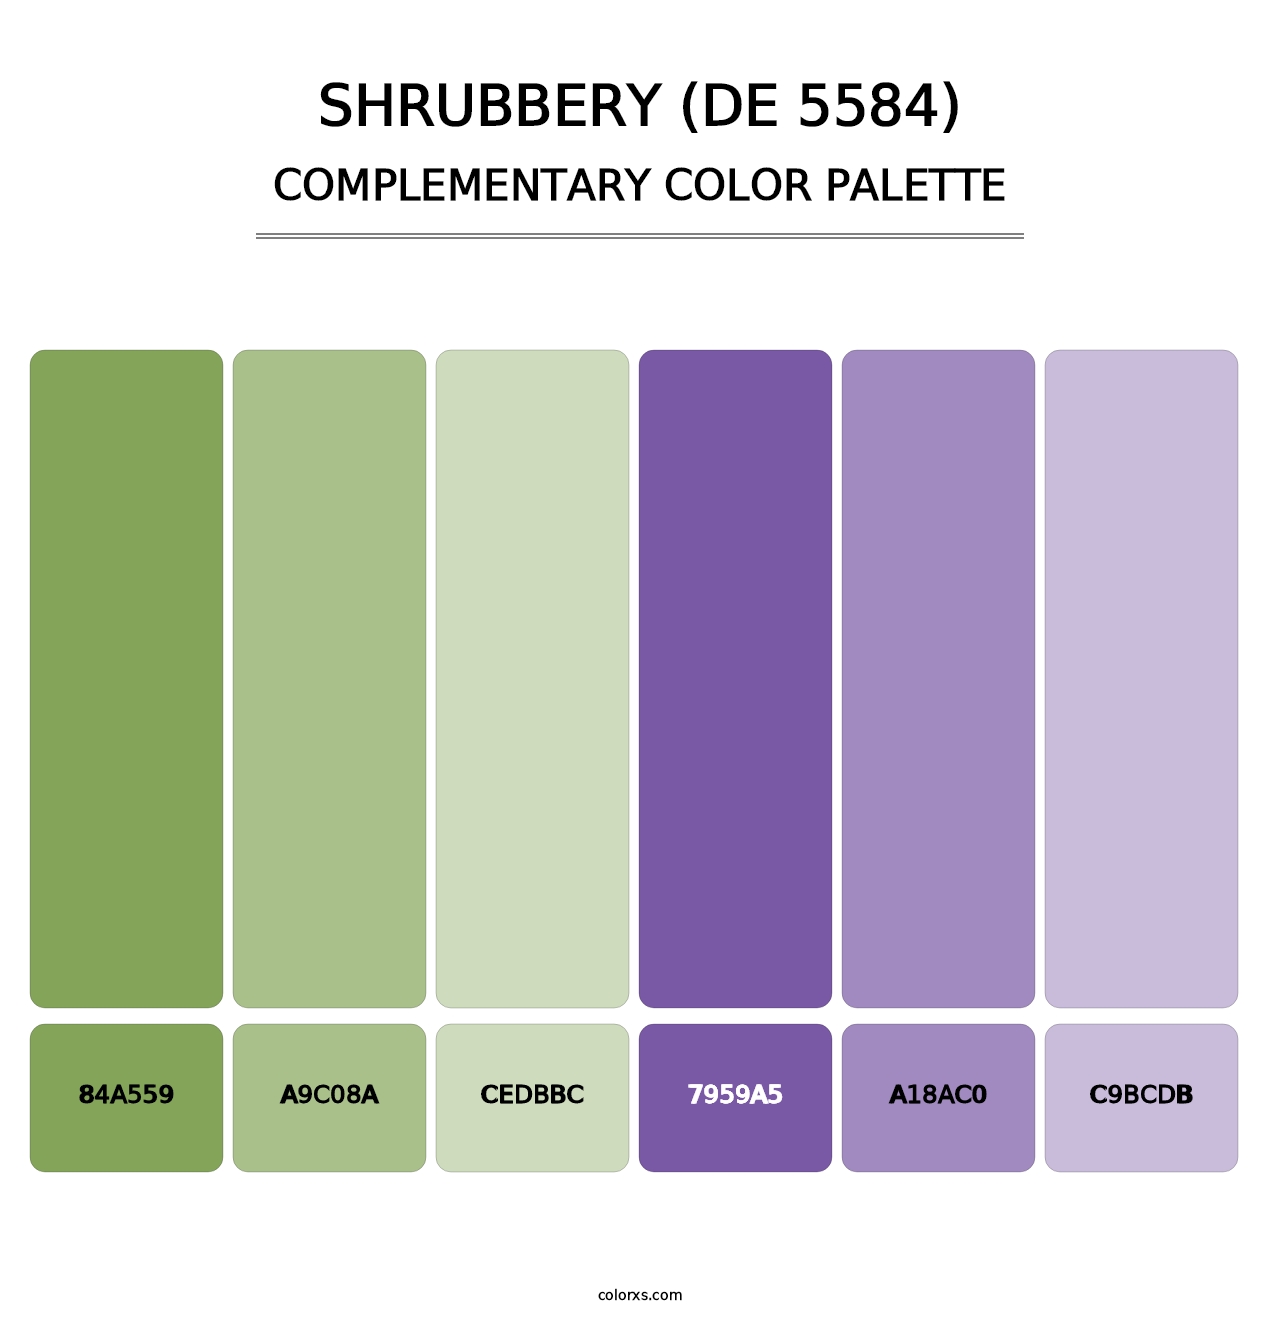 Shrubbery (DE 5584) - Complementary Color Palette